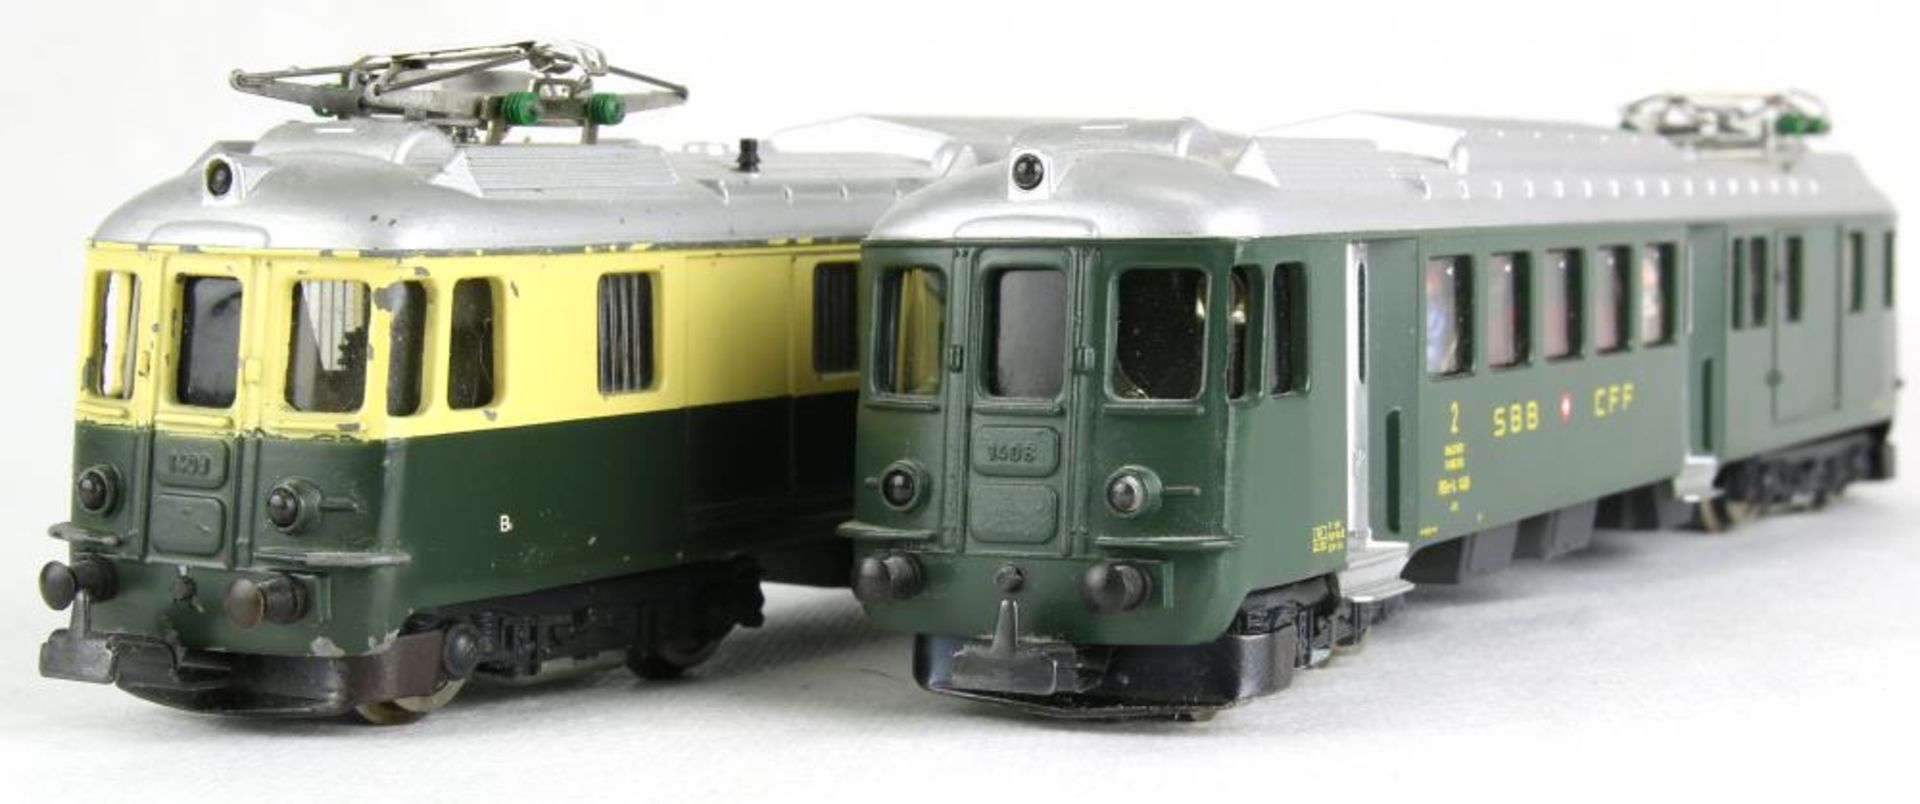 Zwei Schweizer E-Loks. Hag H0. Bodensee-Toggenburg und 1408 der SBB CFF. Bespielt, teils beschädigt,